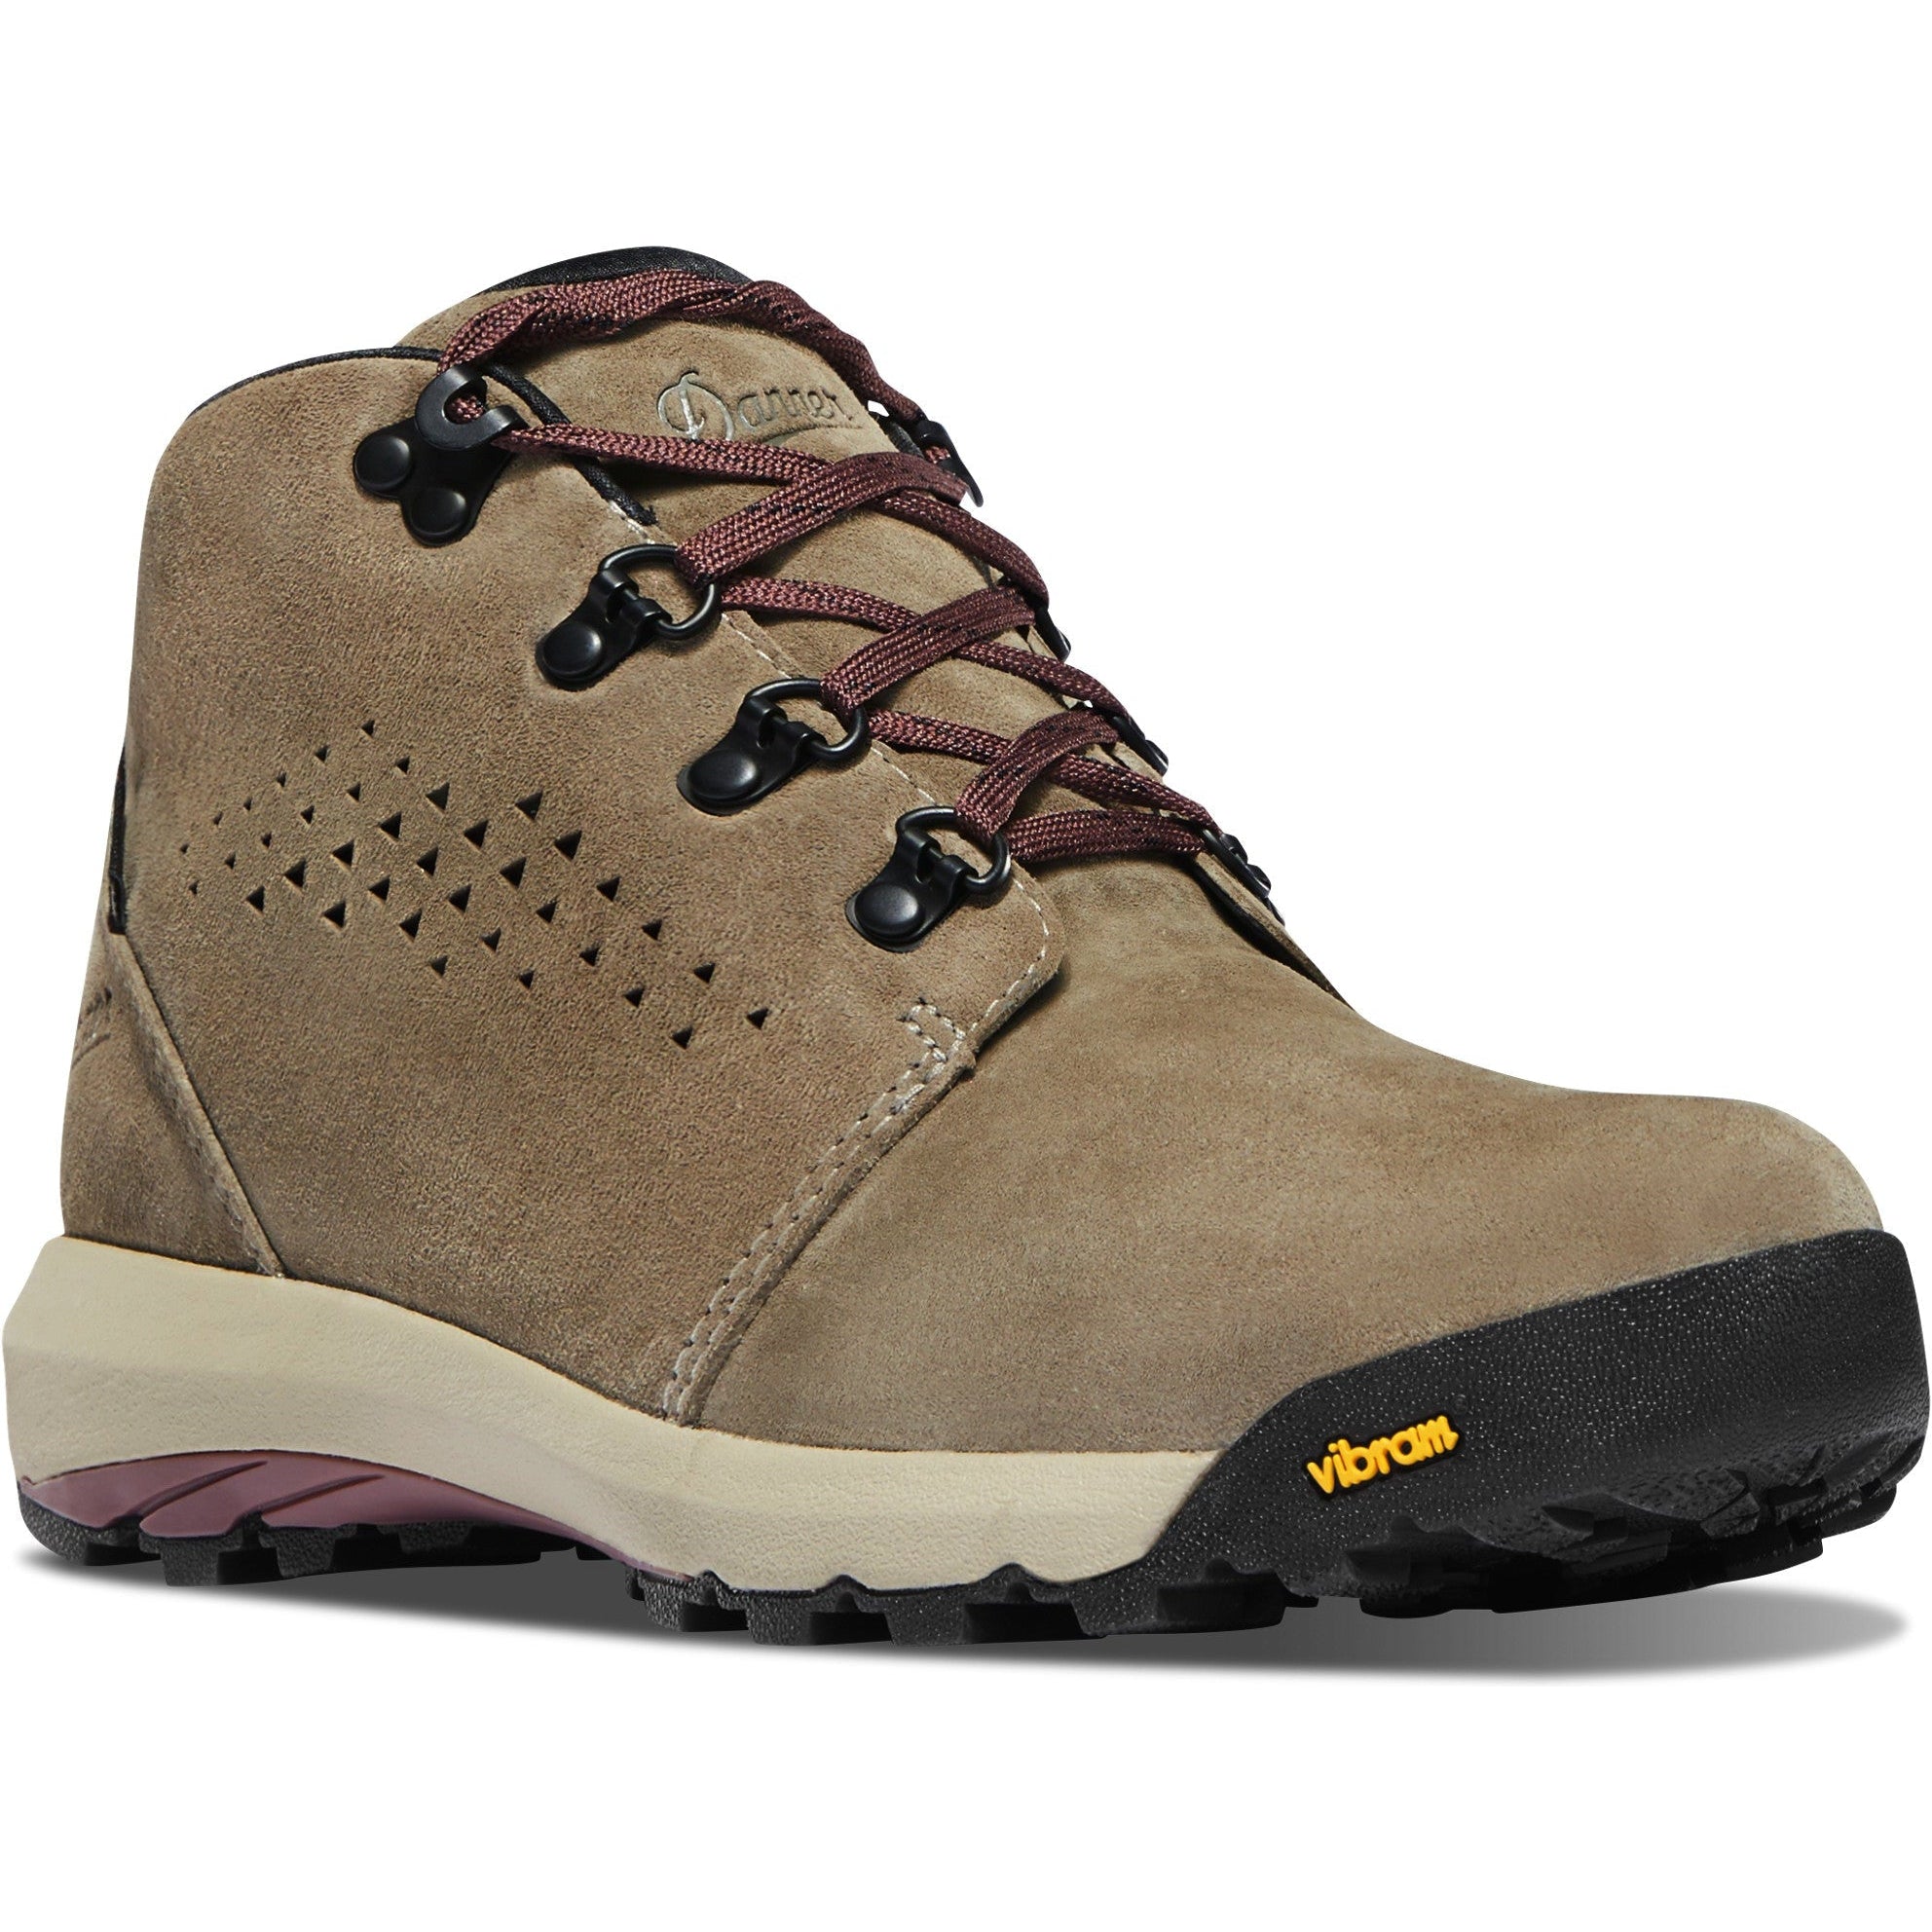 Danner Women's Inquire Chukka 4" WP Hiking Boot - Gray/Plum - 64501 5 / Medium / Gray - Overlook Boots